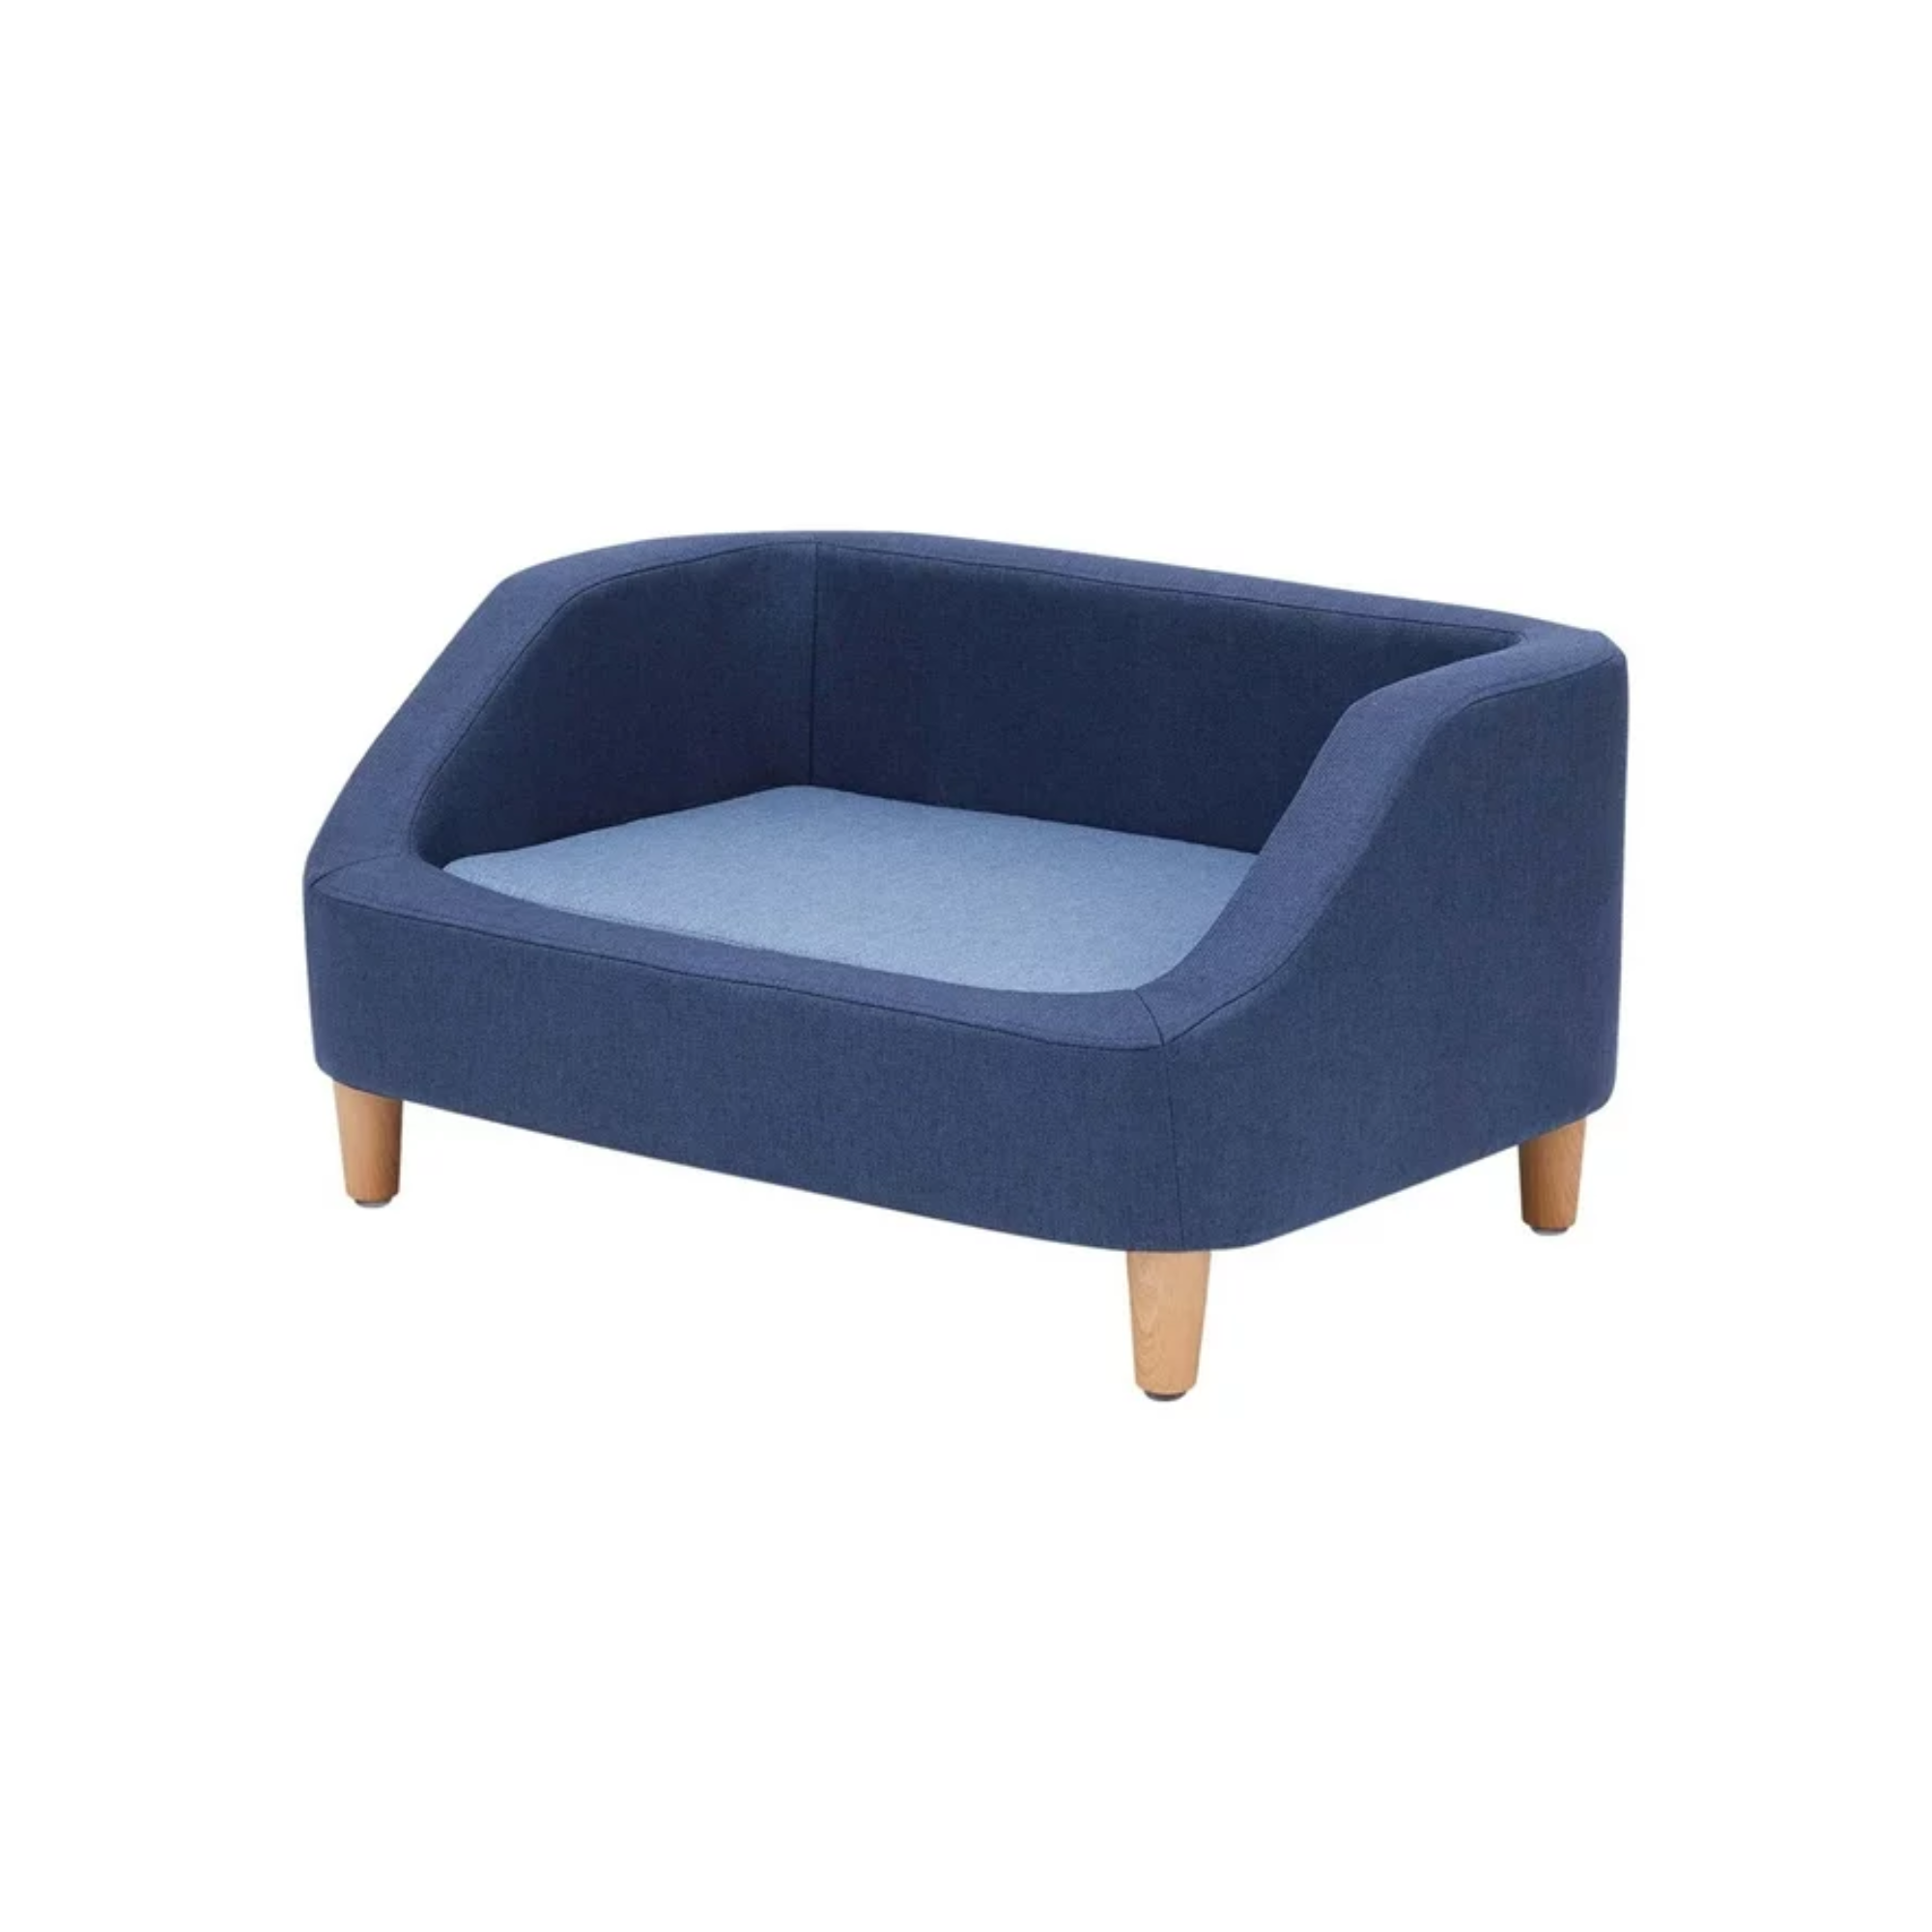 A blue pet sofa bed